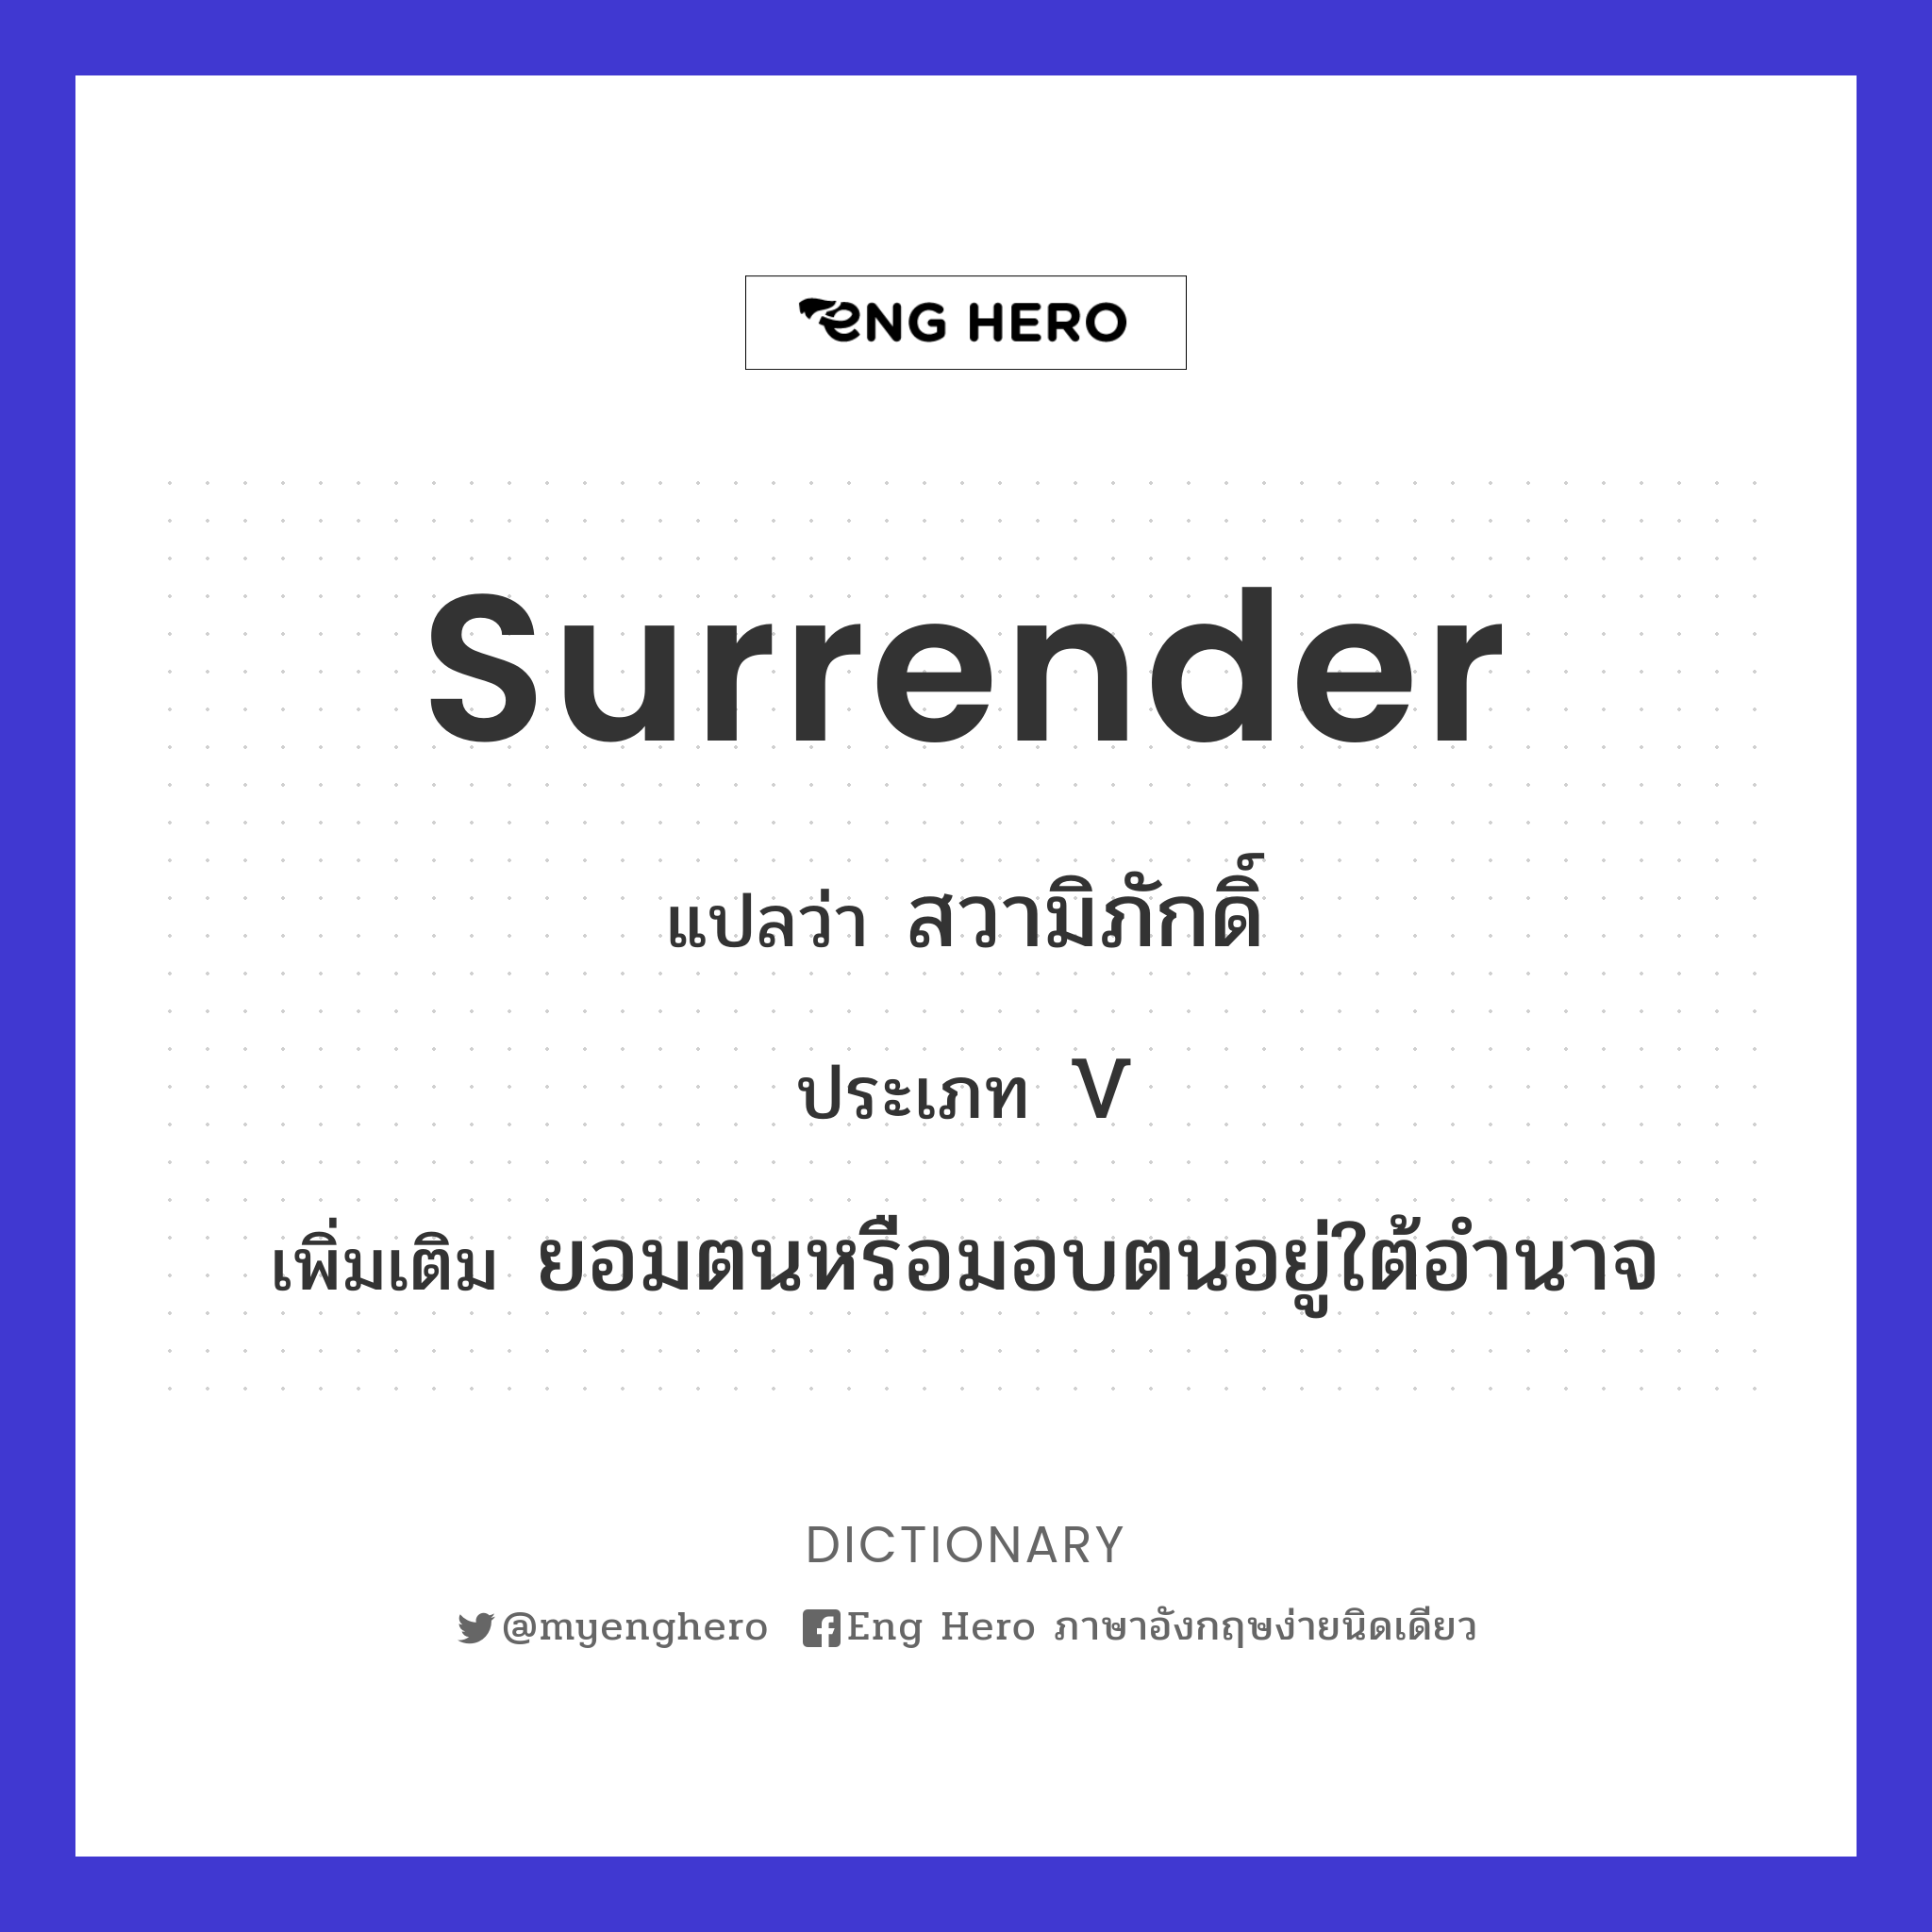 surrender